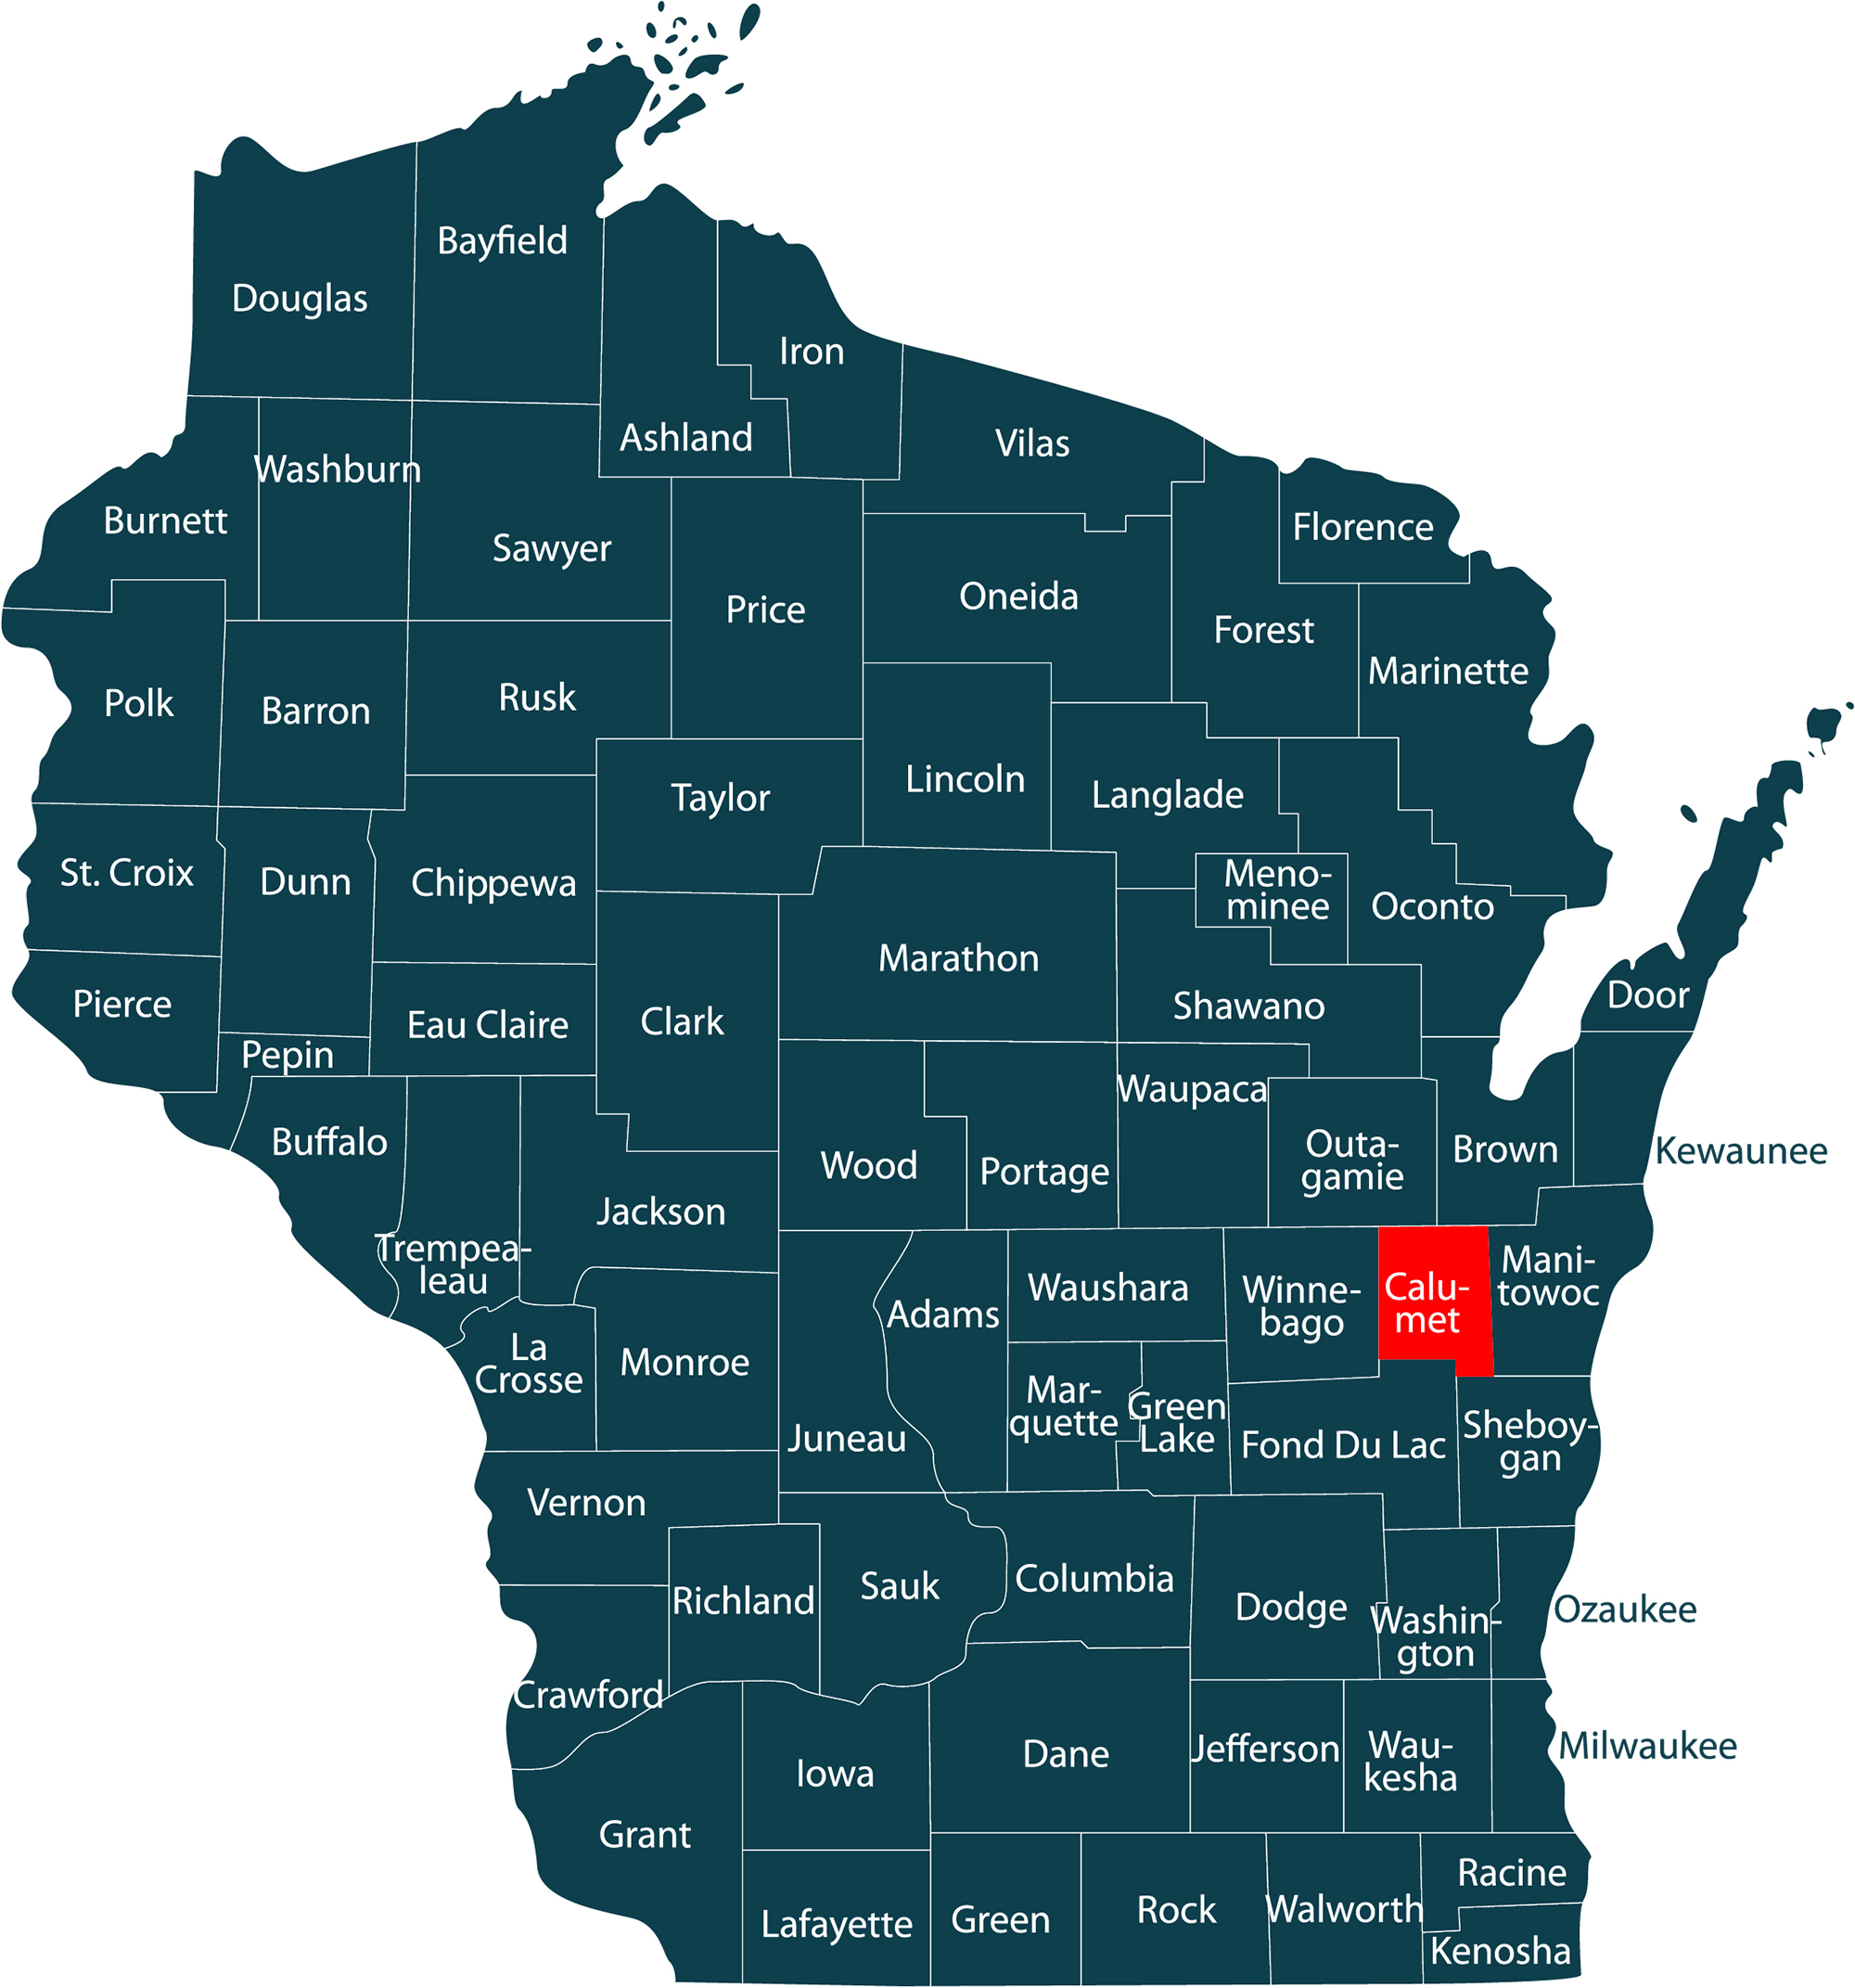 Calumet Wisconsin @ wisconsin.com